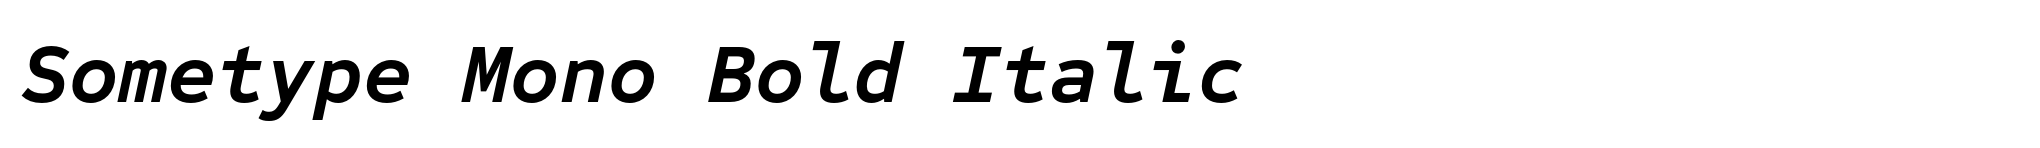 Sometype Mono Bold Italic image